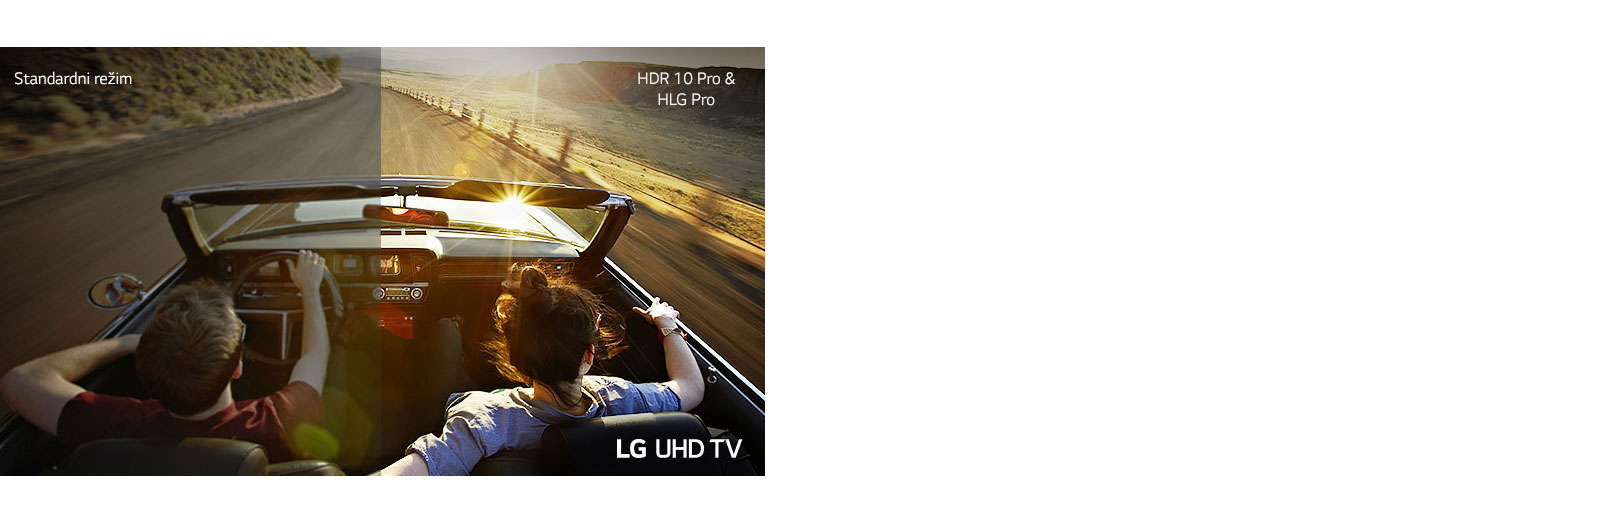 La coppia sta guidando in auto sulla strada.  La metà viene visualizzata su uno schermo standard con scarsa qualità dell'immagine.  L'altra metà viene mostrata con un'immagine nitida e vivida di LG UHD TV.